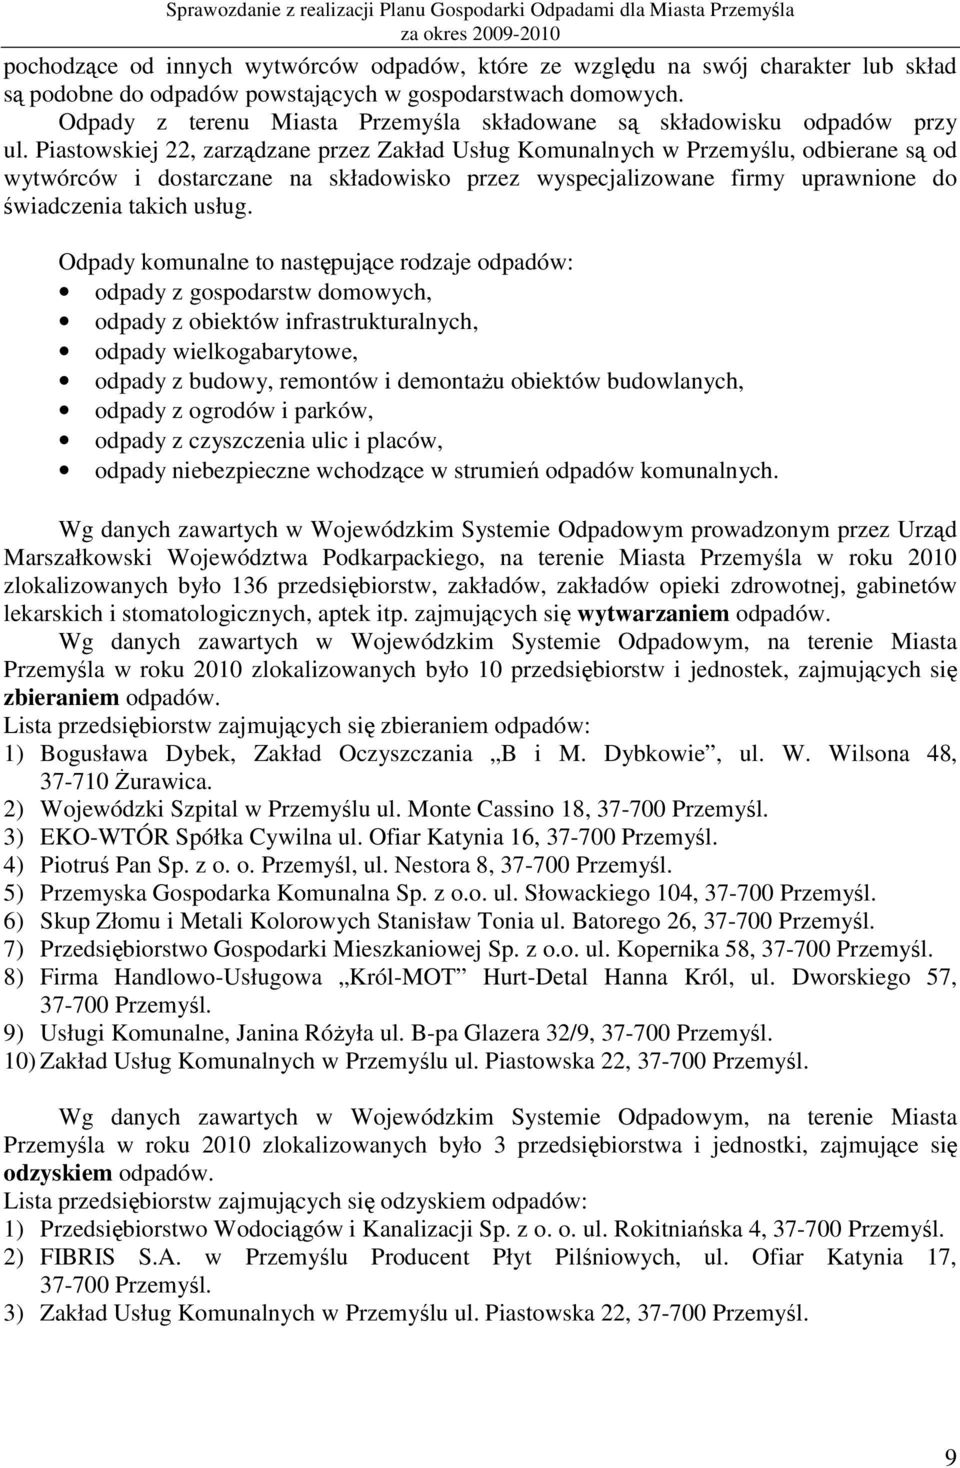 Piastowskiej 22, zarządzane przez Zakład Usług Komunalnych w Przemyślu, odbierane są od wytwórców i dostarczane na składowisko przez wyspecjalizowane firmy uprawnione do świadczenia takich usług.